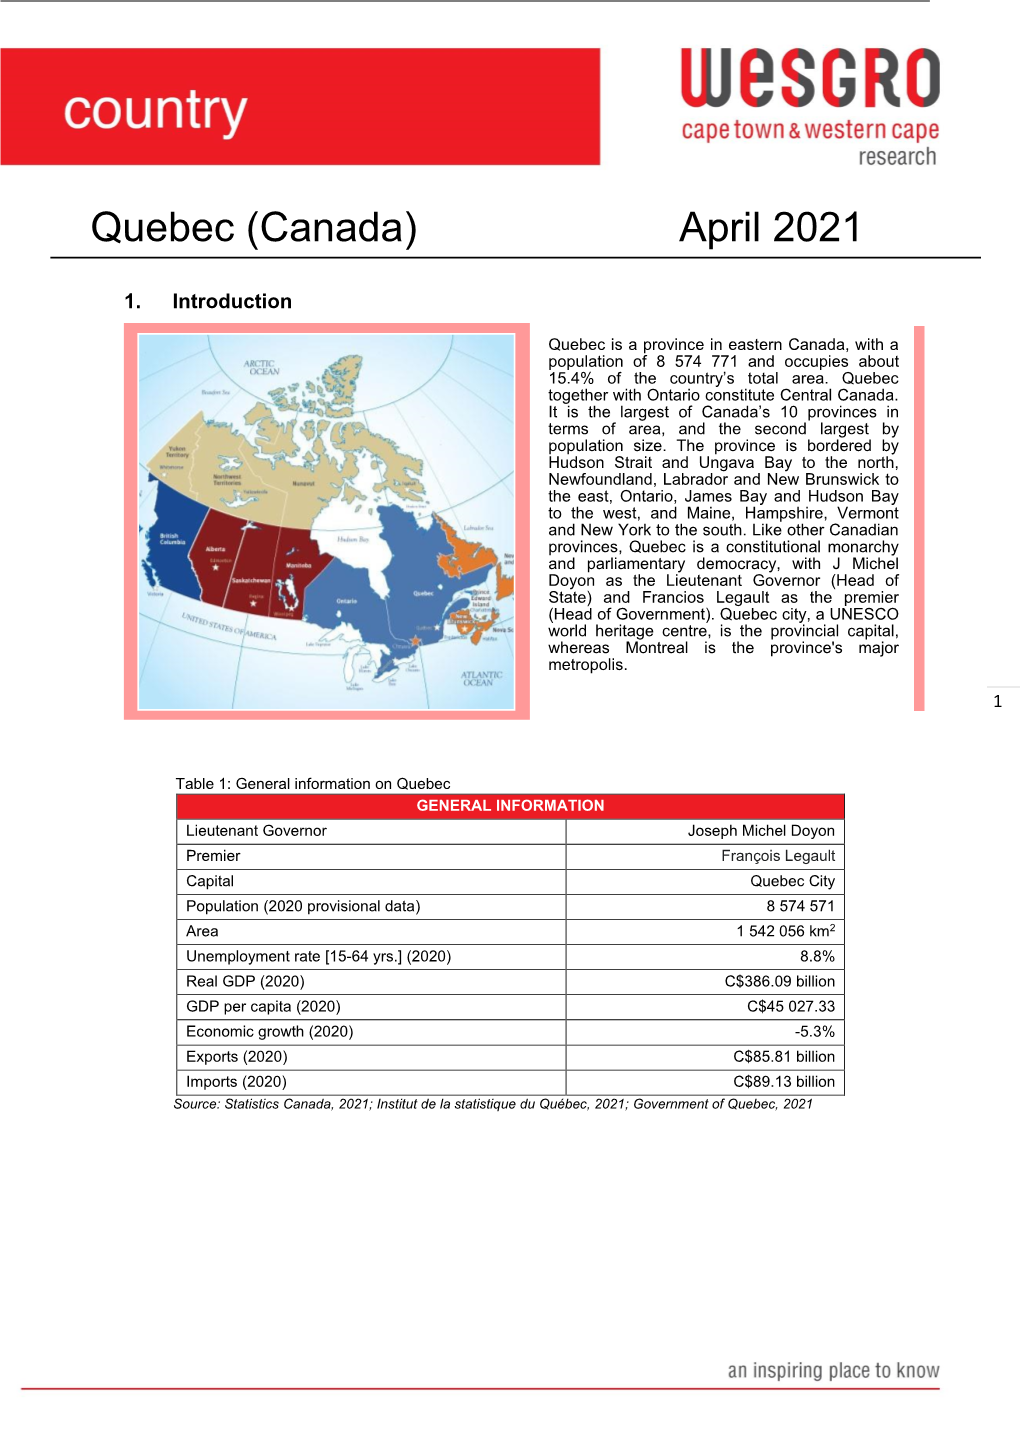 Quebec (Canada) April 2021